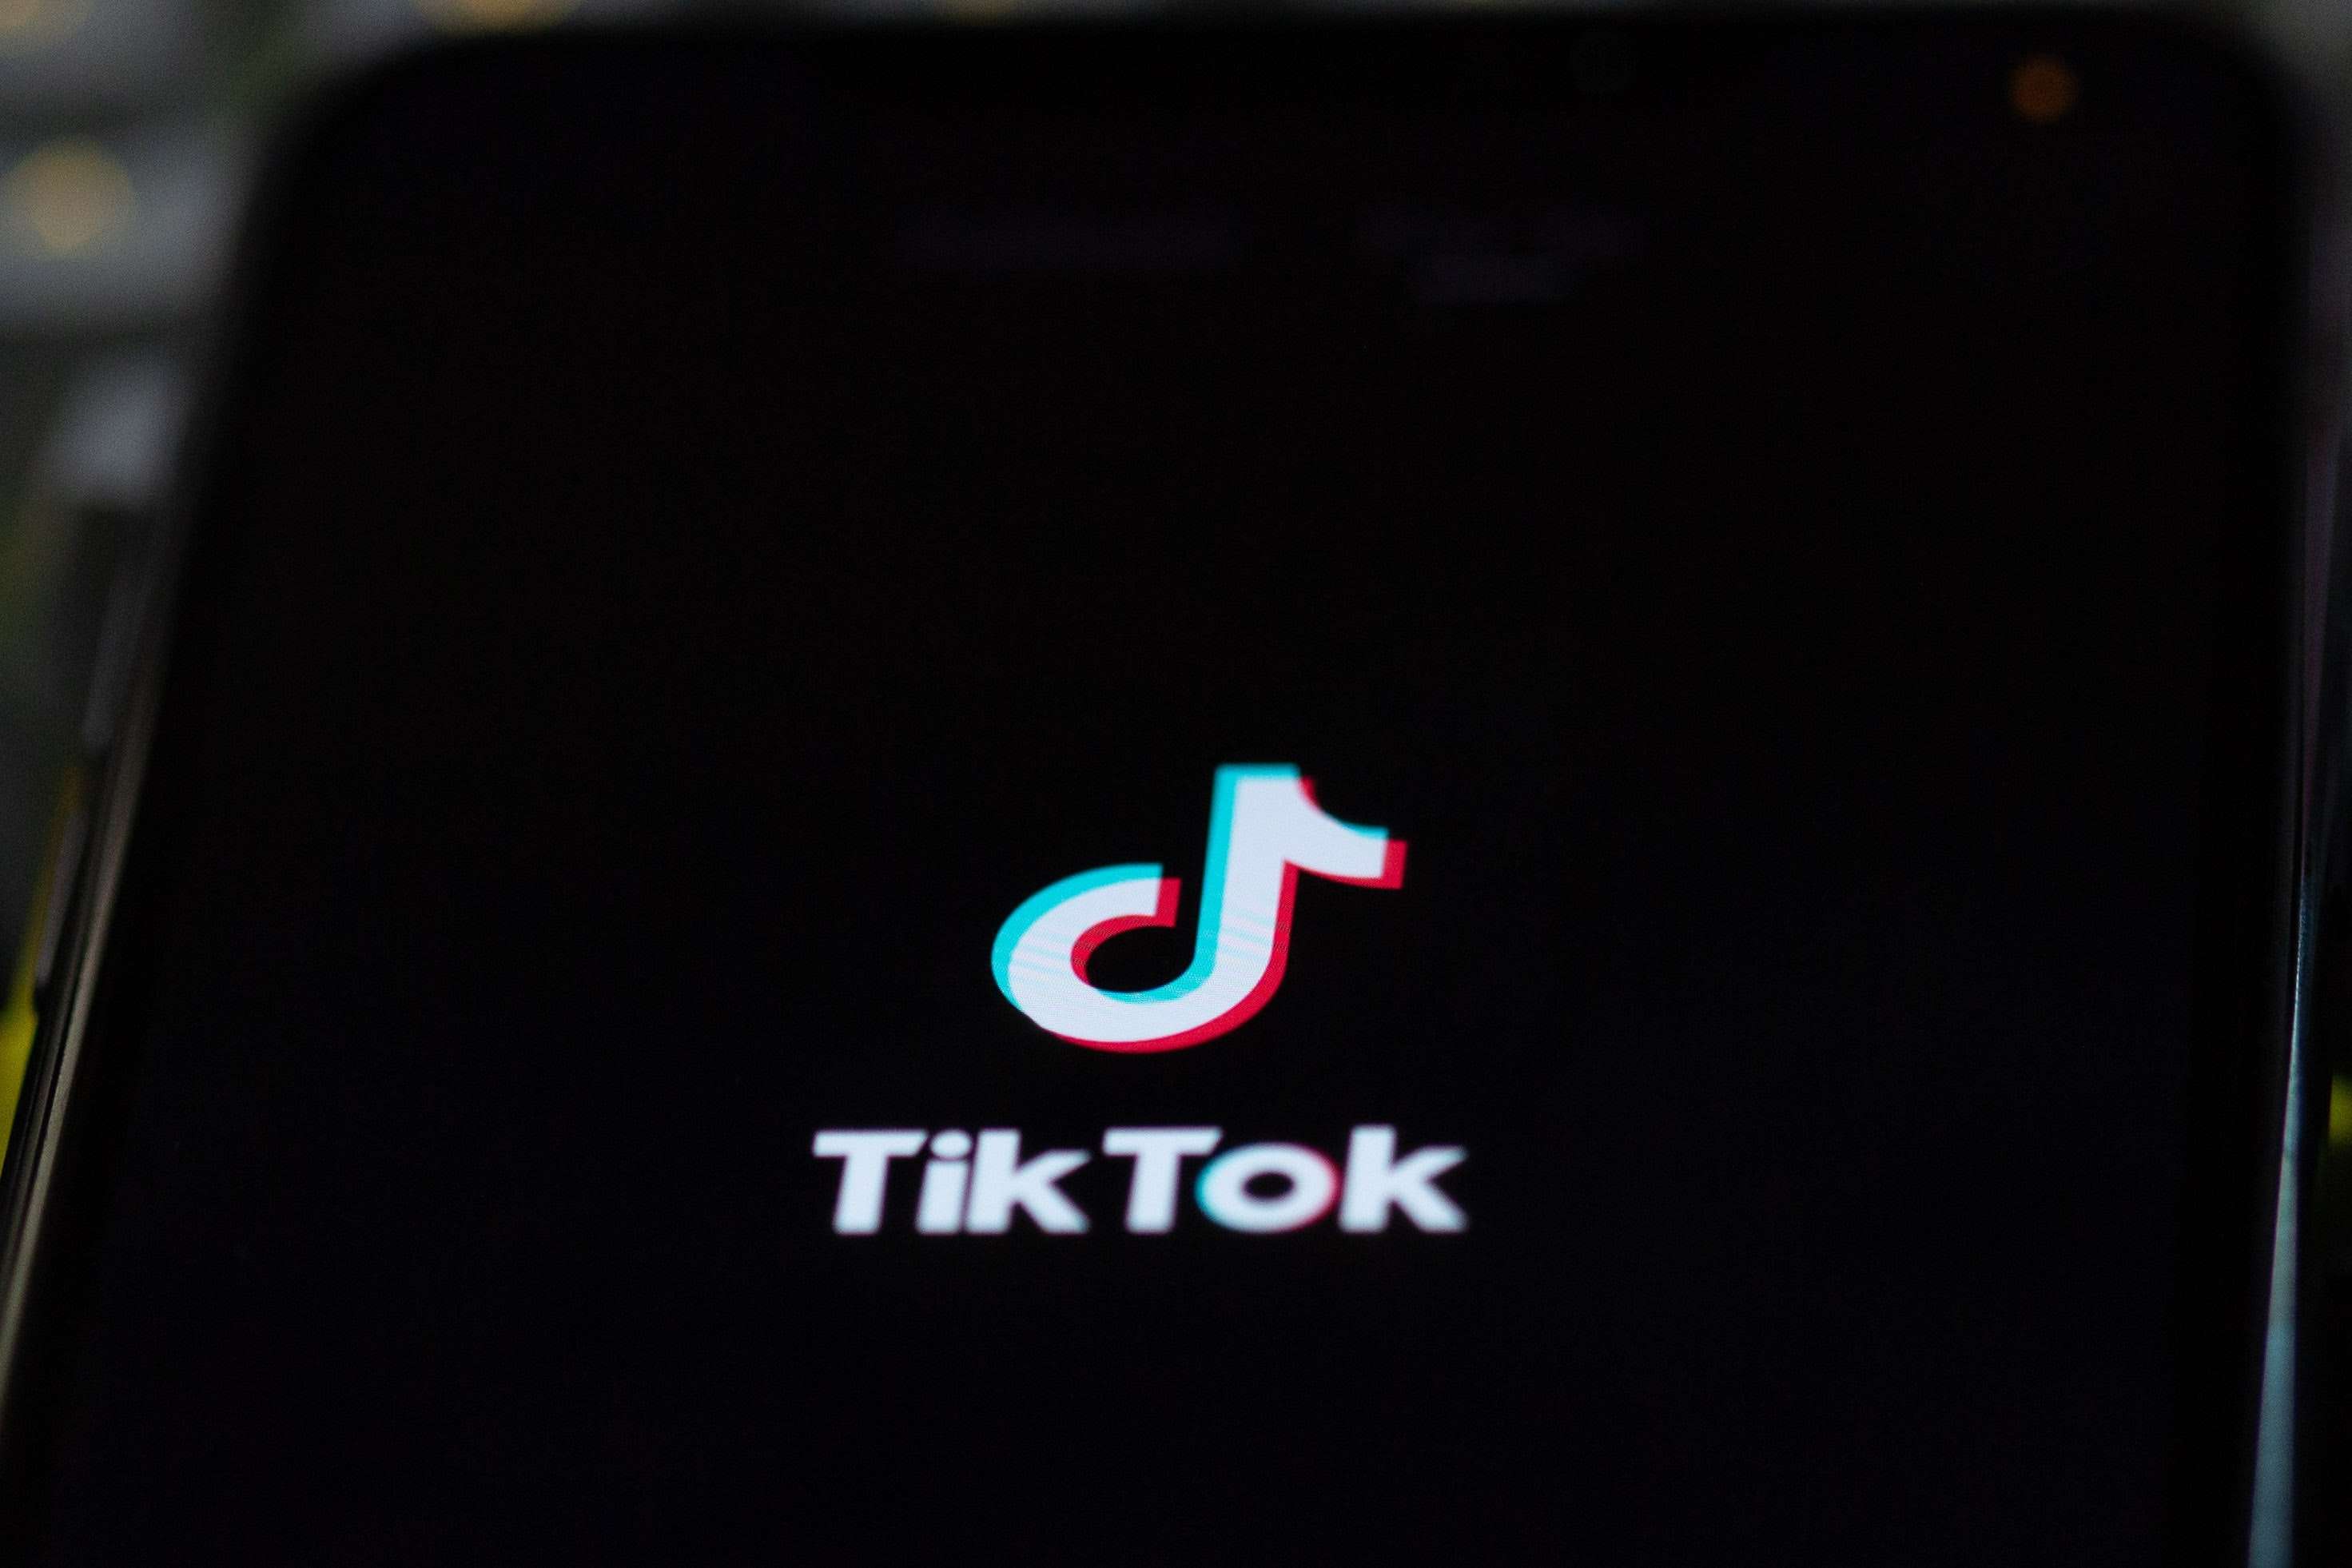 Stock image of TikTok logo